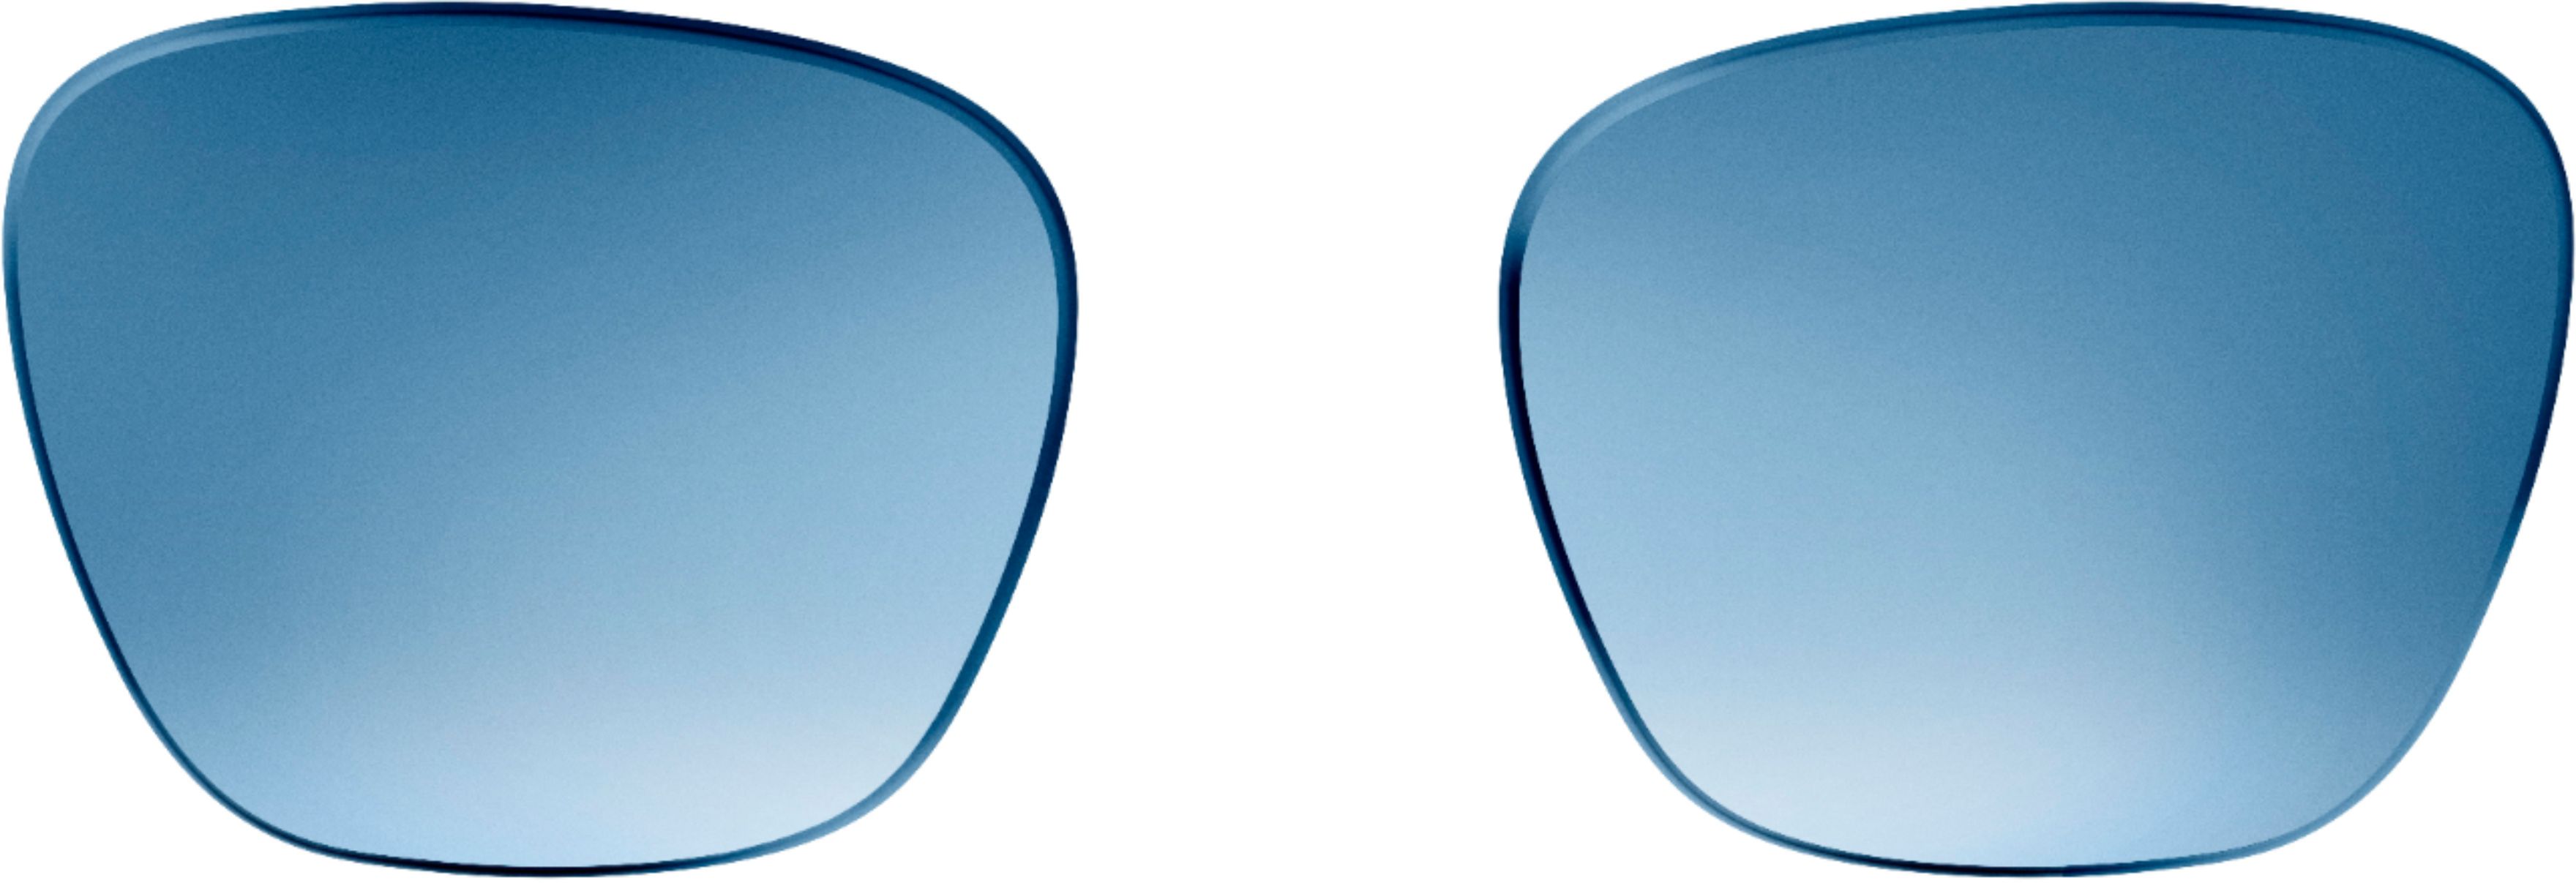 Bose - Alto Style Lenses Large - Blue Gradient